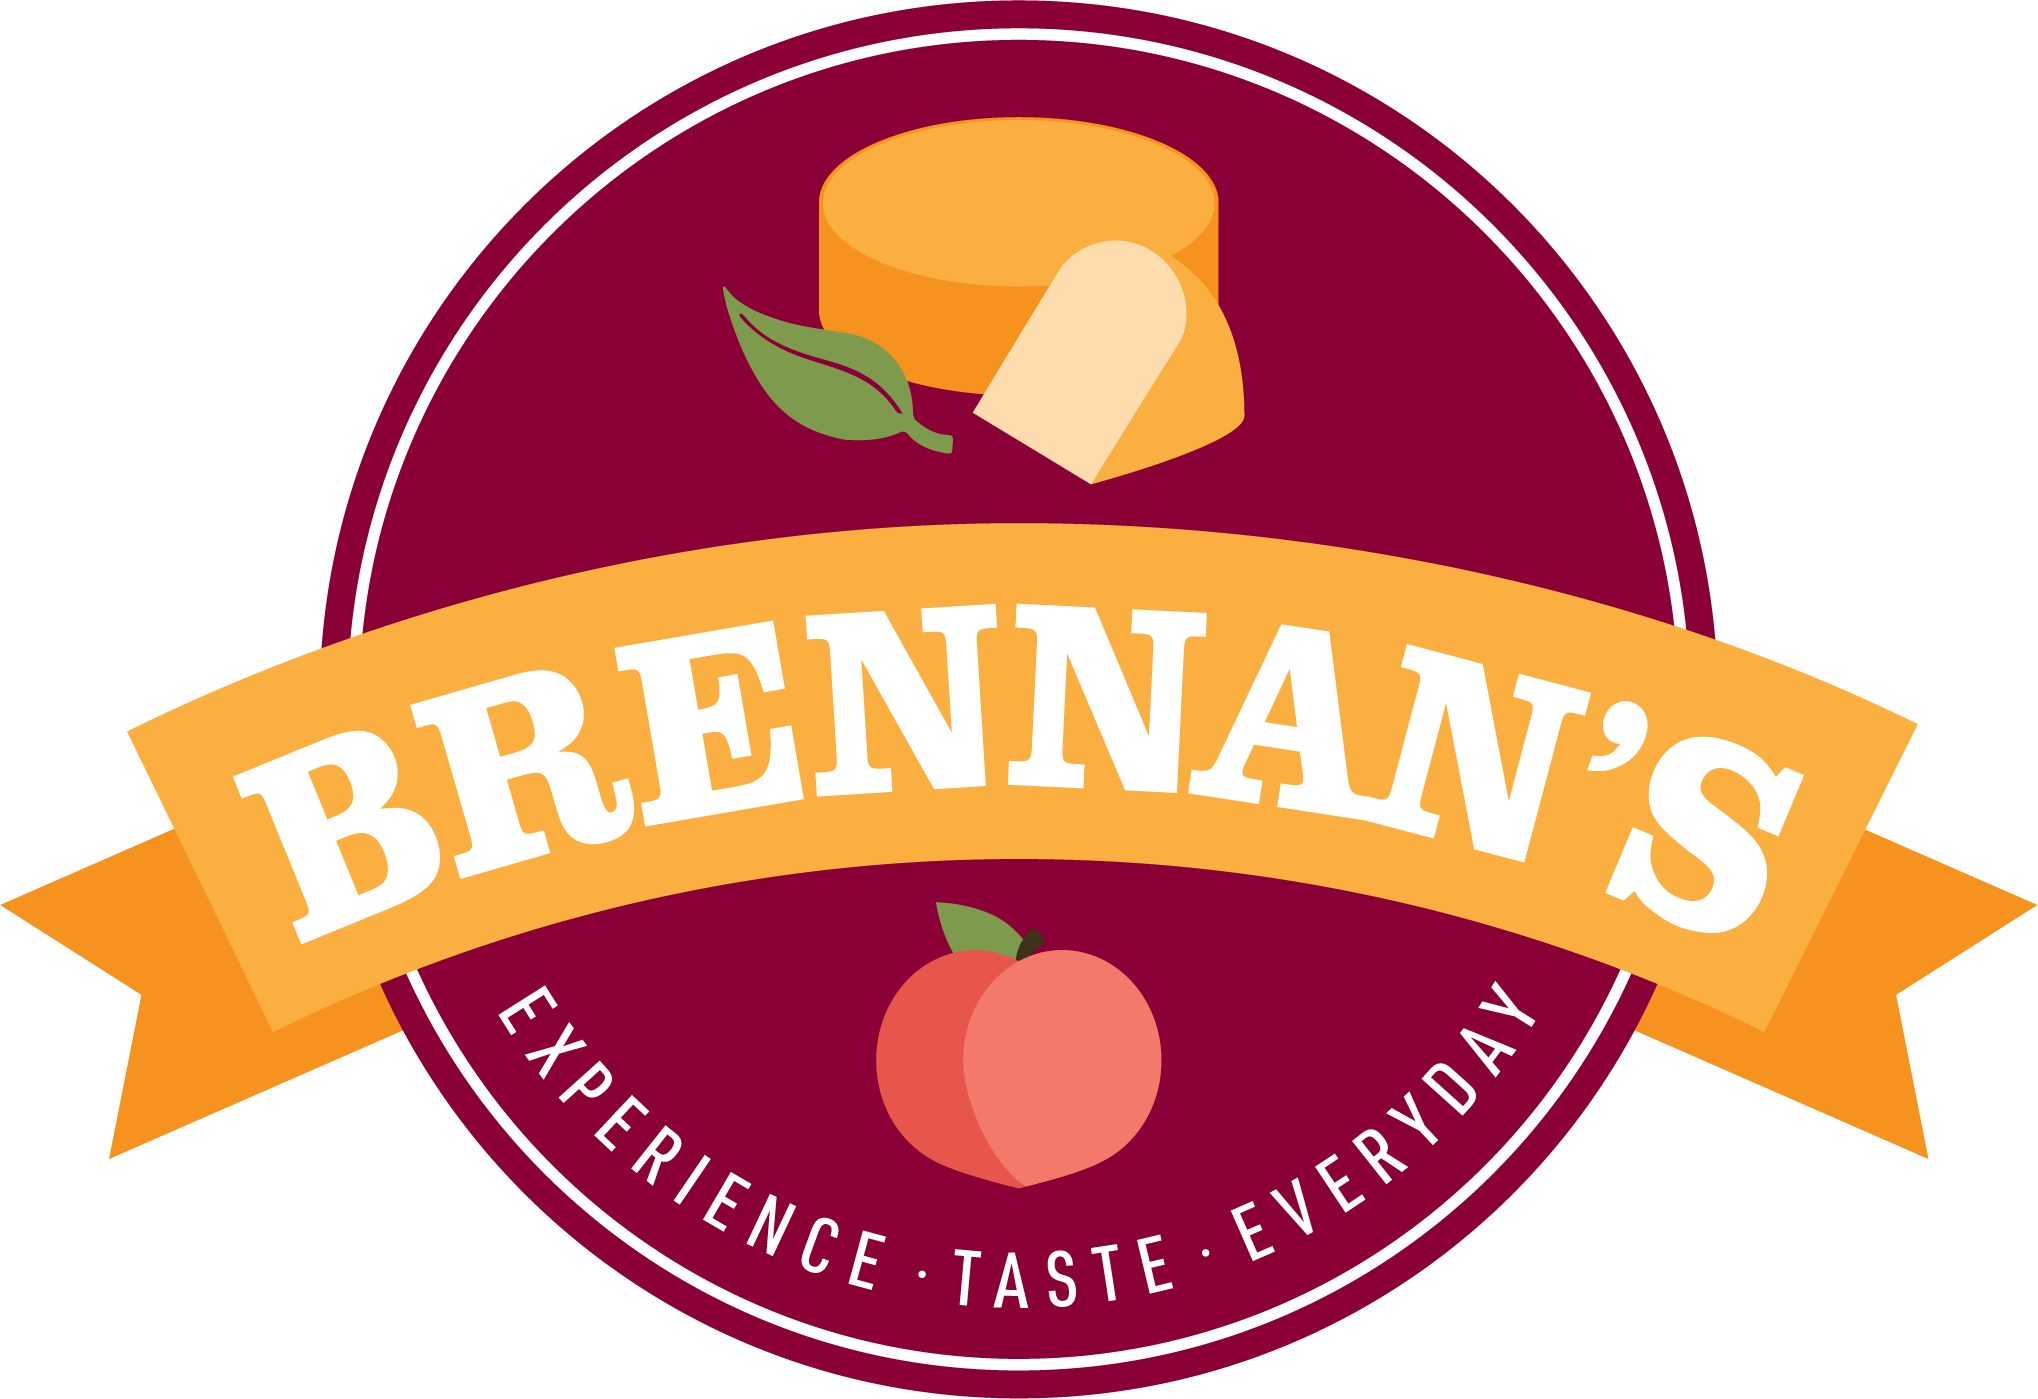 Brennan's Market